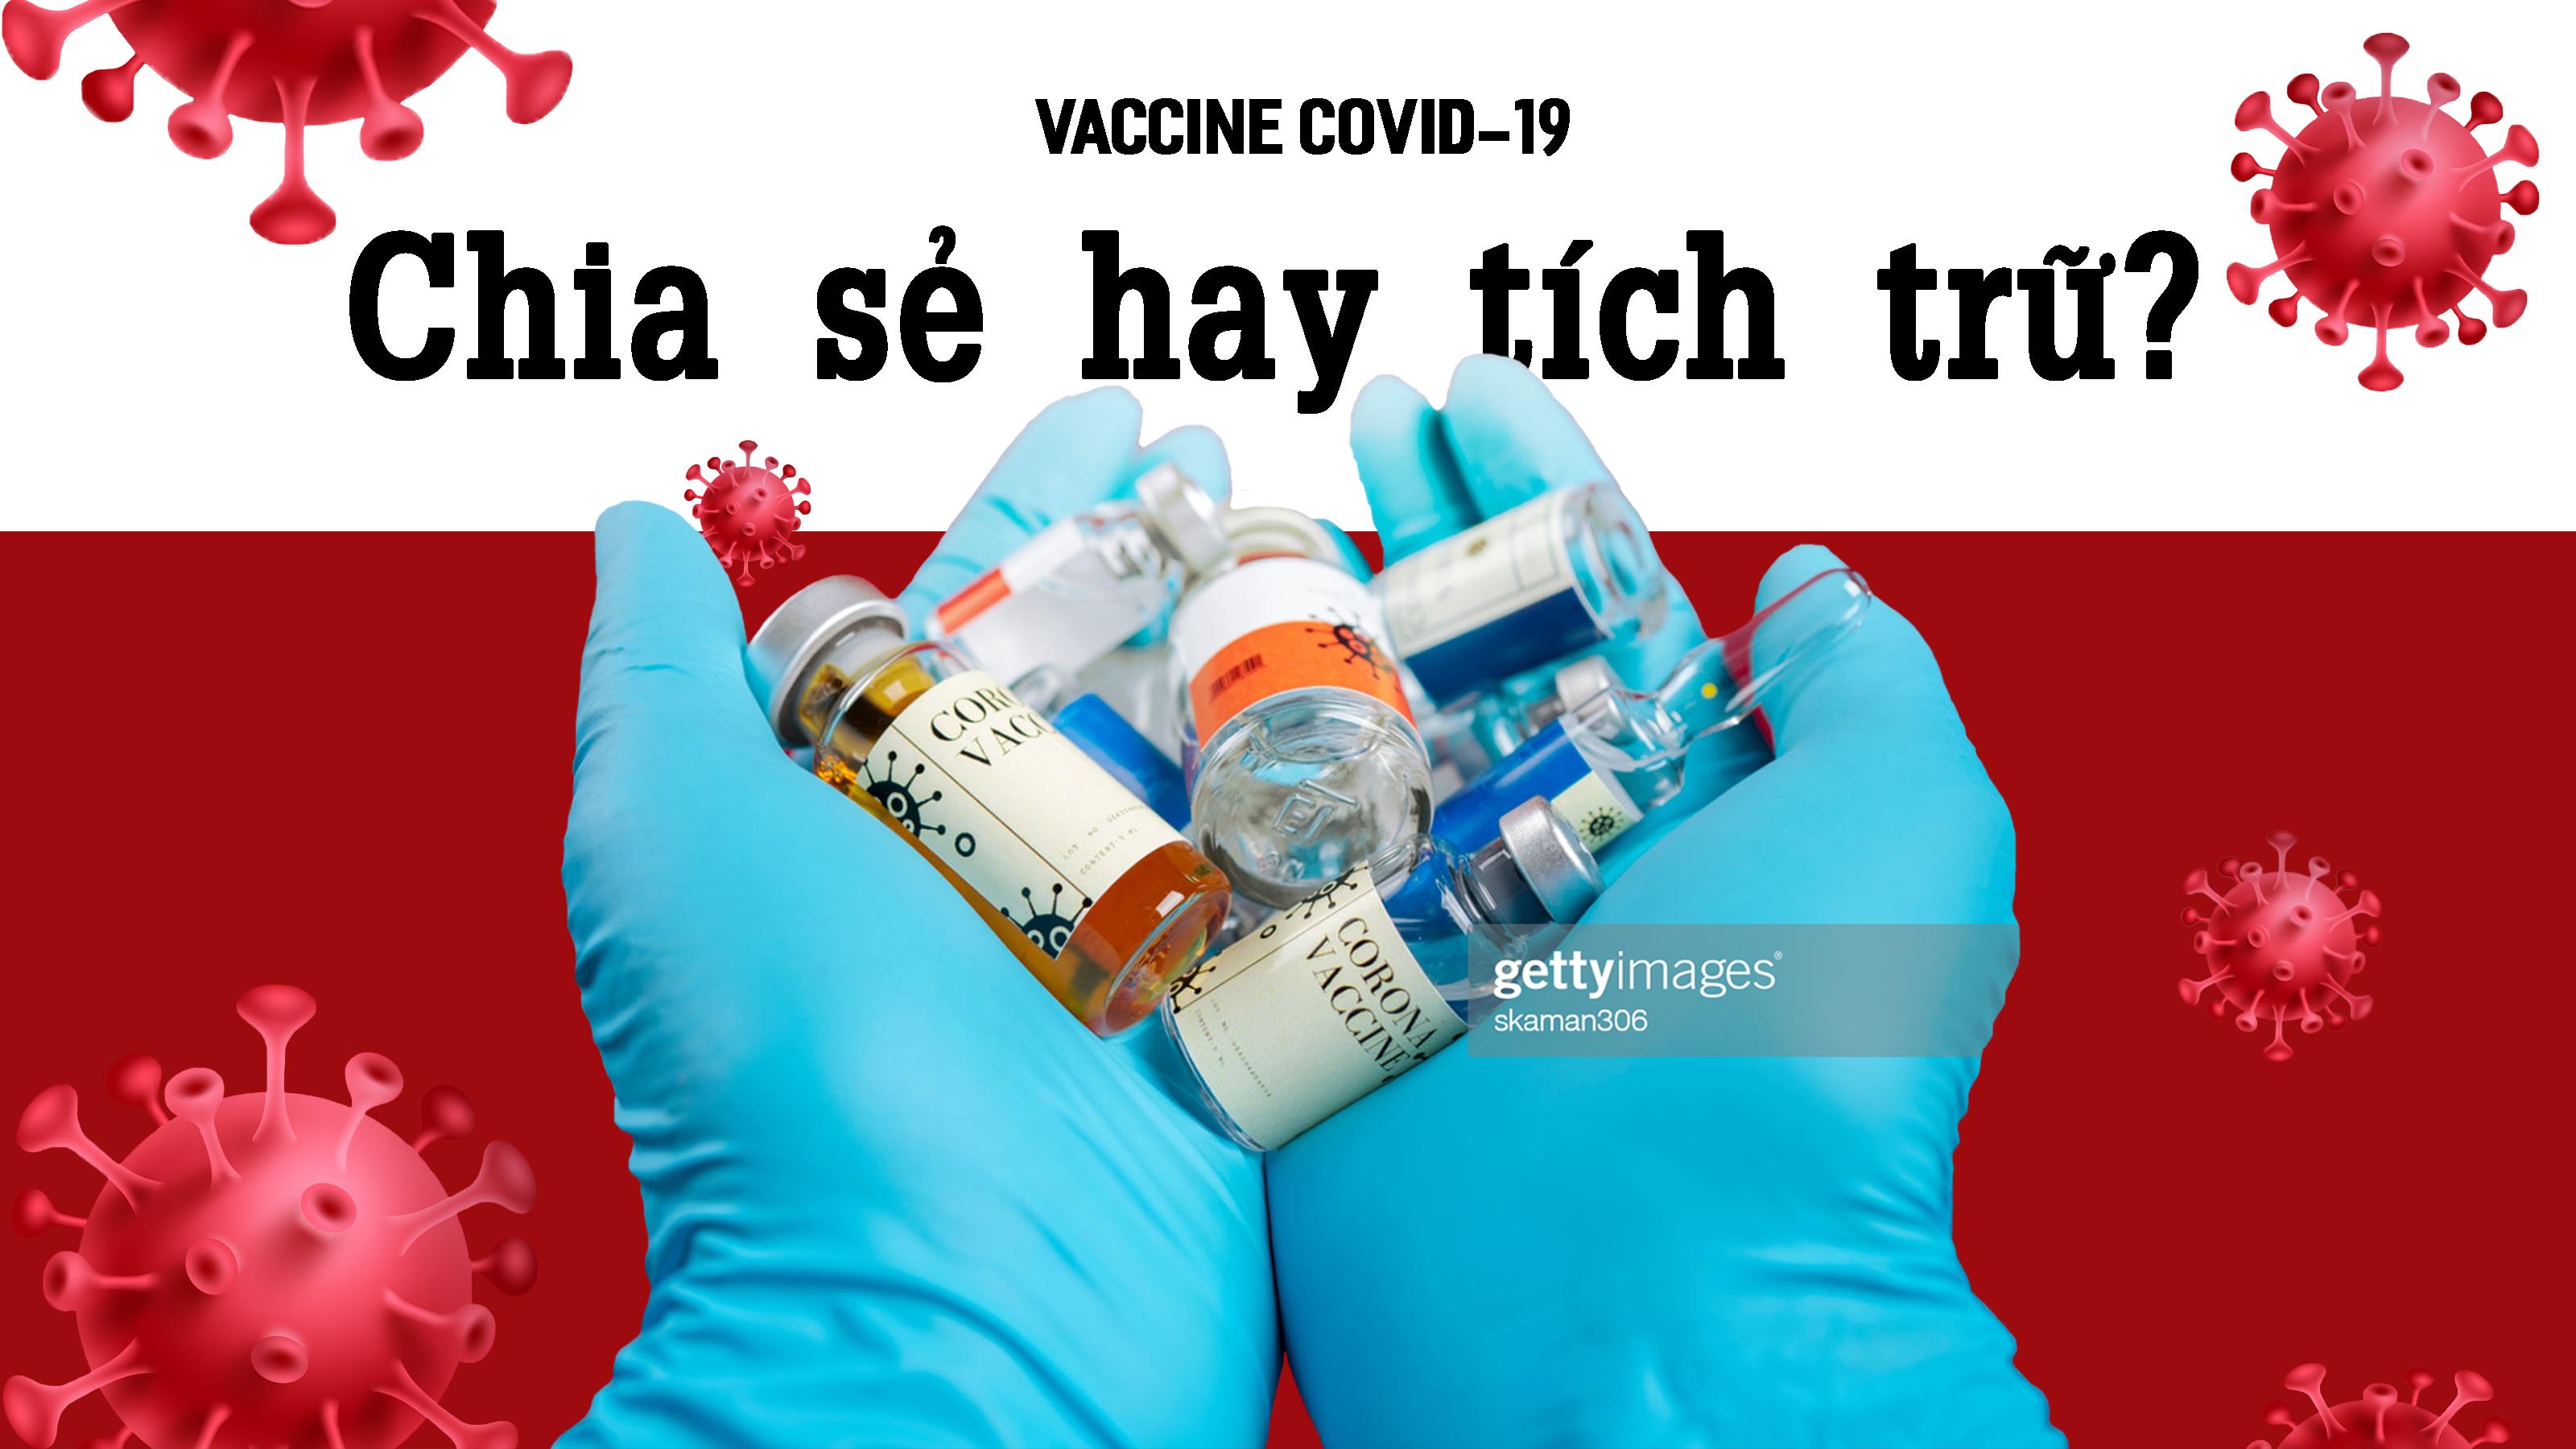 Vaccine COVID-19: Chia sẻ hay tích trữ?